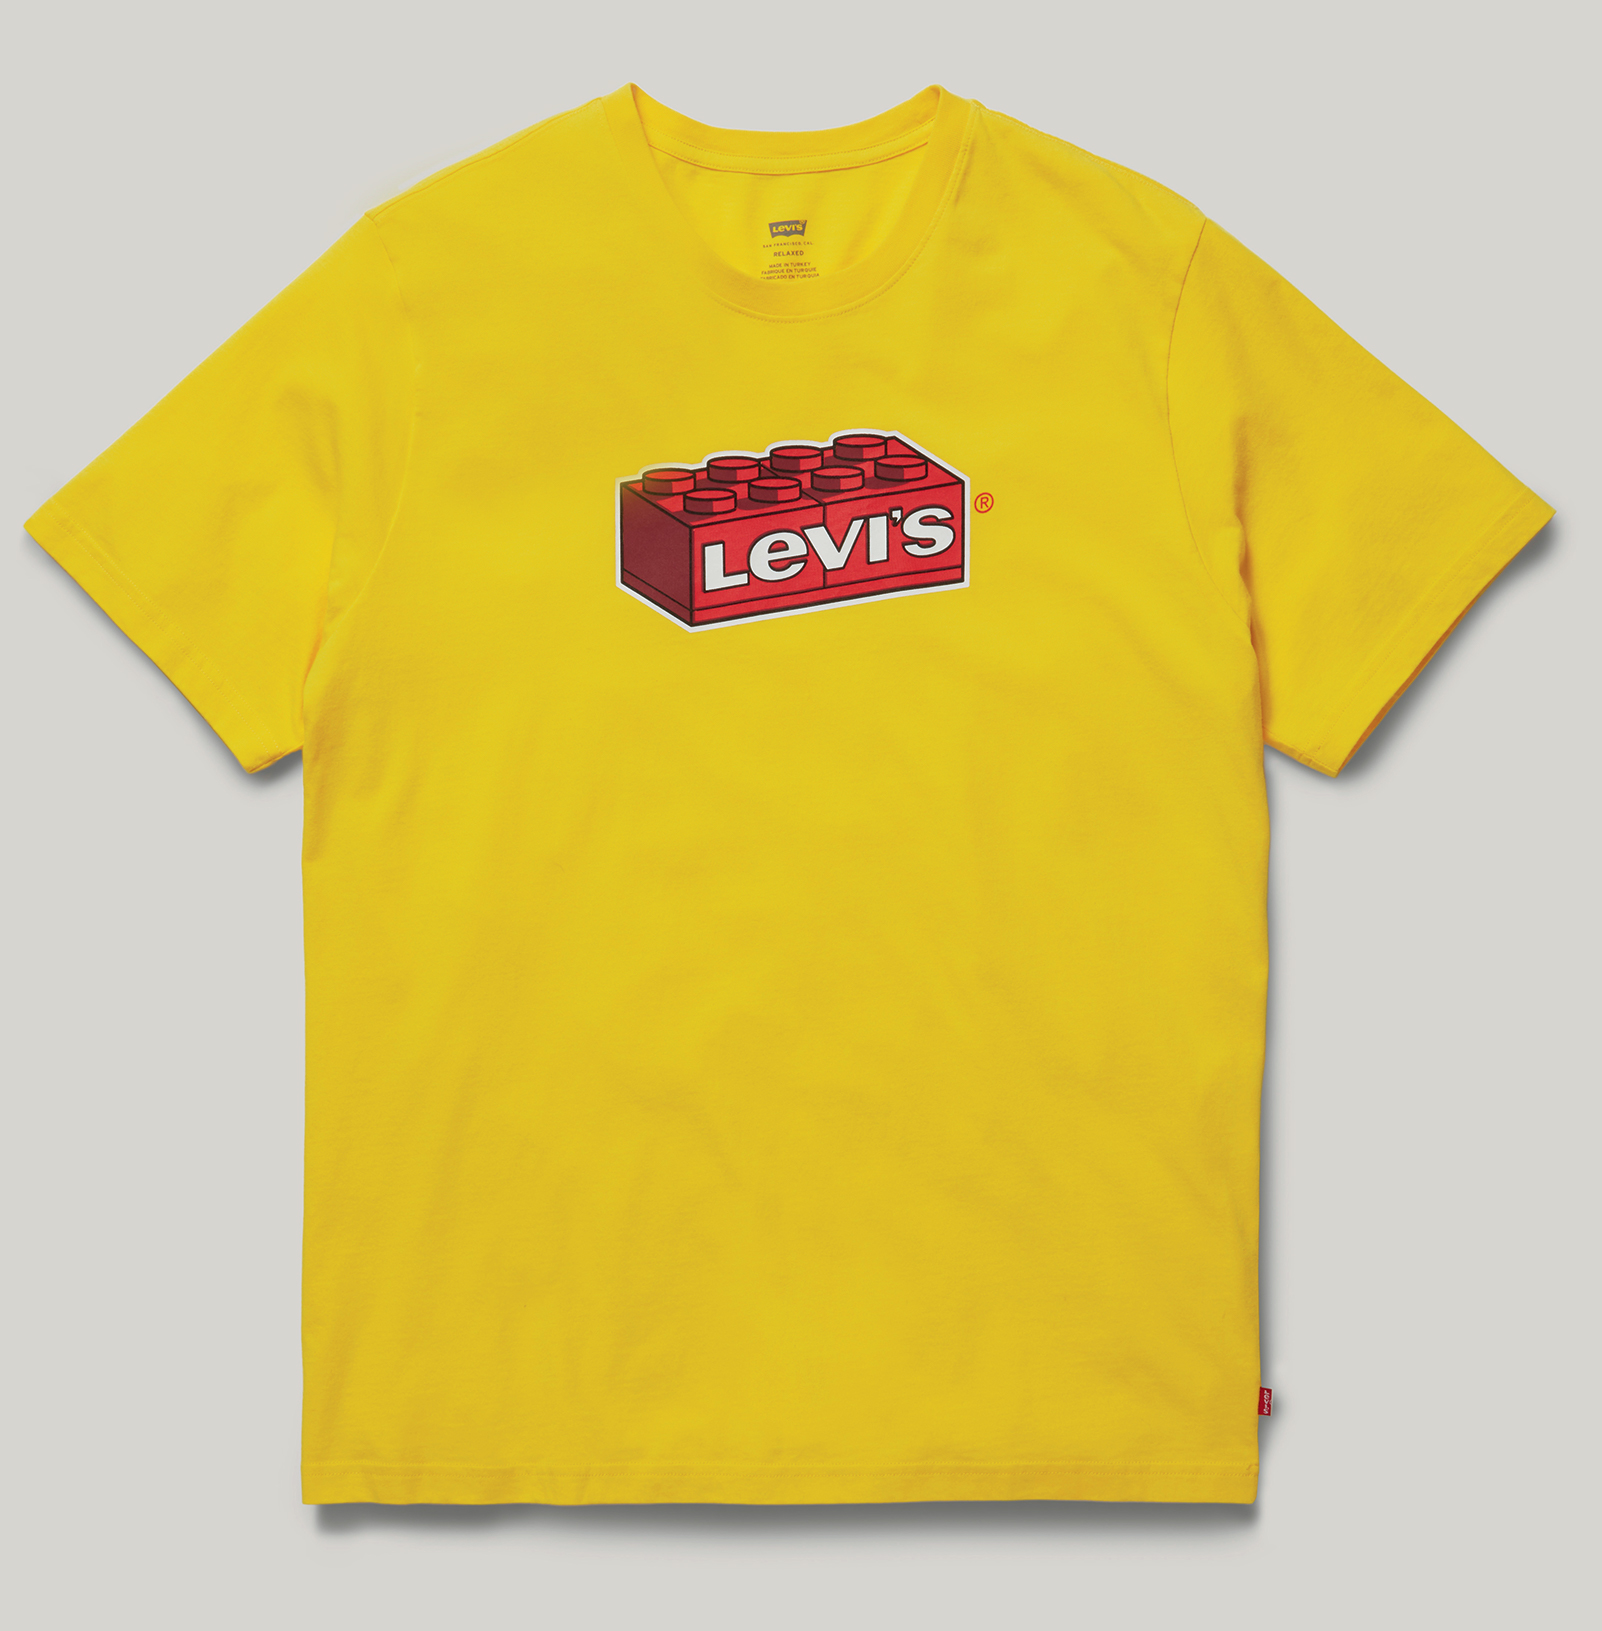 LEGO x Levi's Collaboration - Gelbes T-Shirt mit LEGO Stein-Motiv